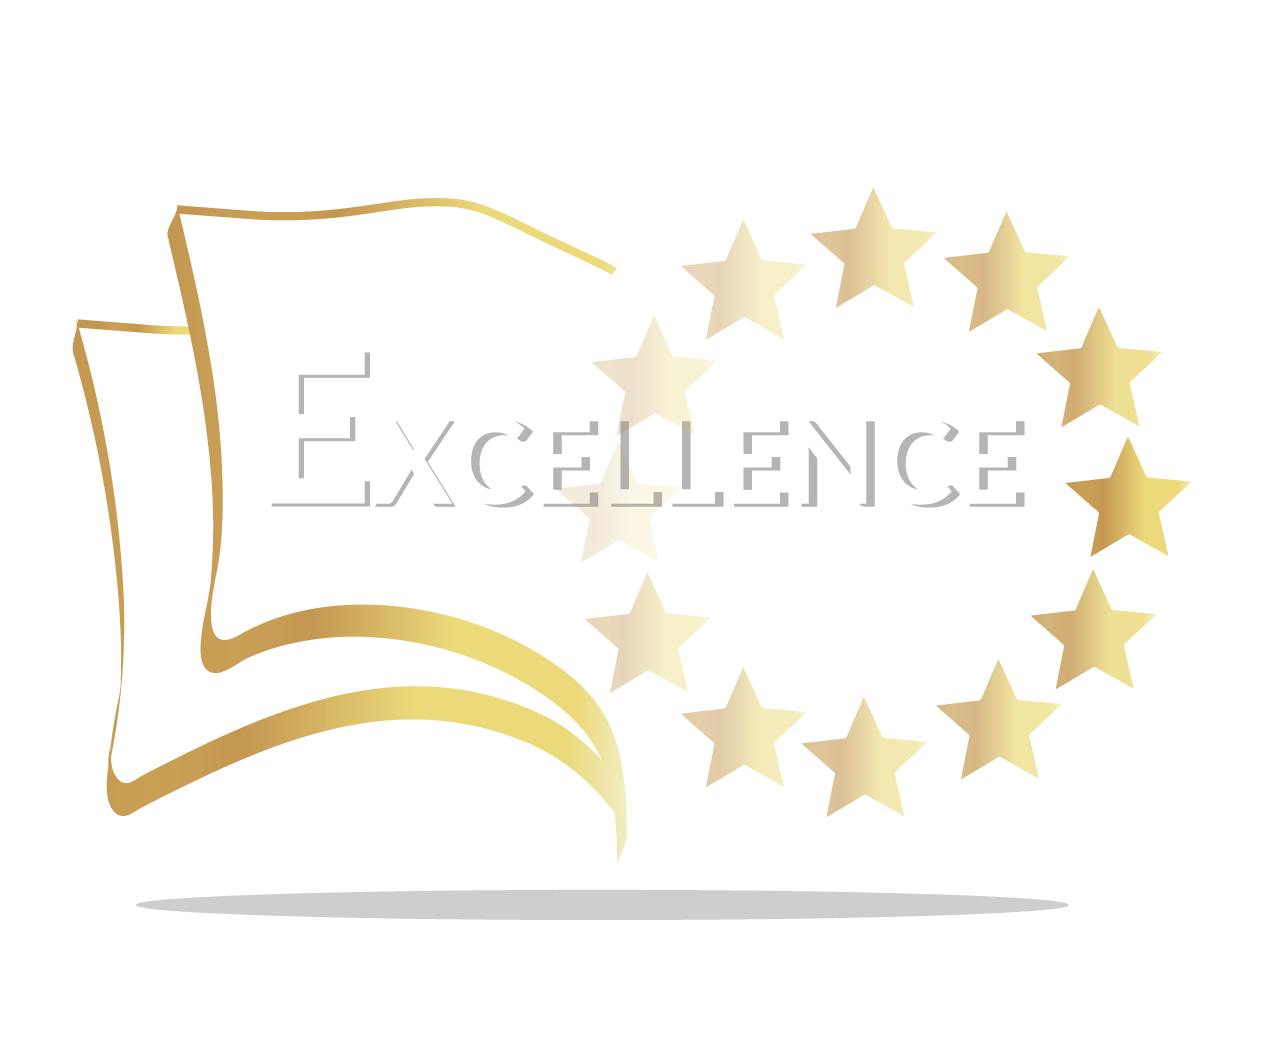 Sello European Excellence Education concedido a EALDE por la calidad de sus programas de posgrado online